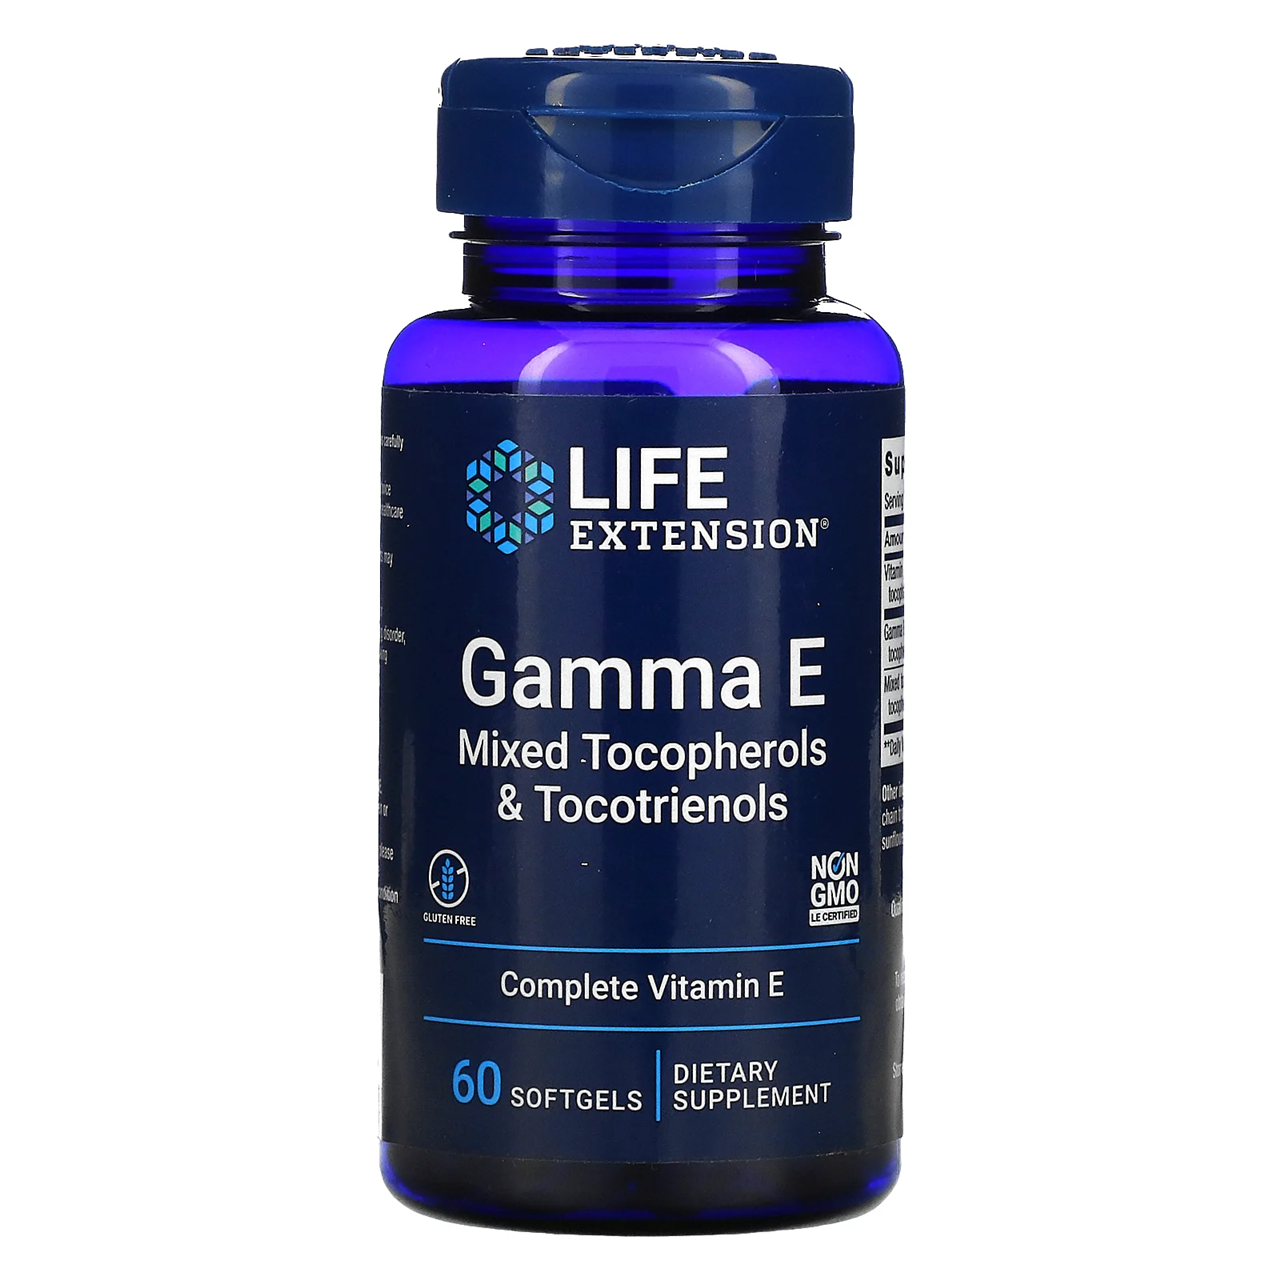 Life Extension  Gamma E Mixed Tocopherols & Tocotrienols / 60 Softgels